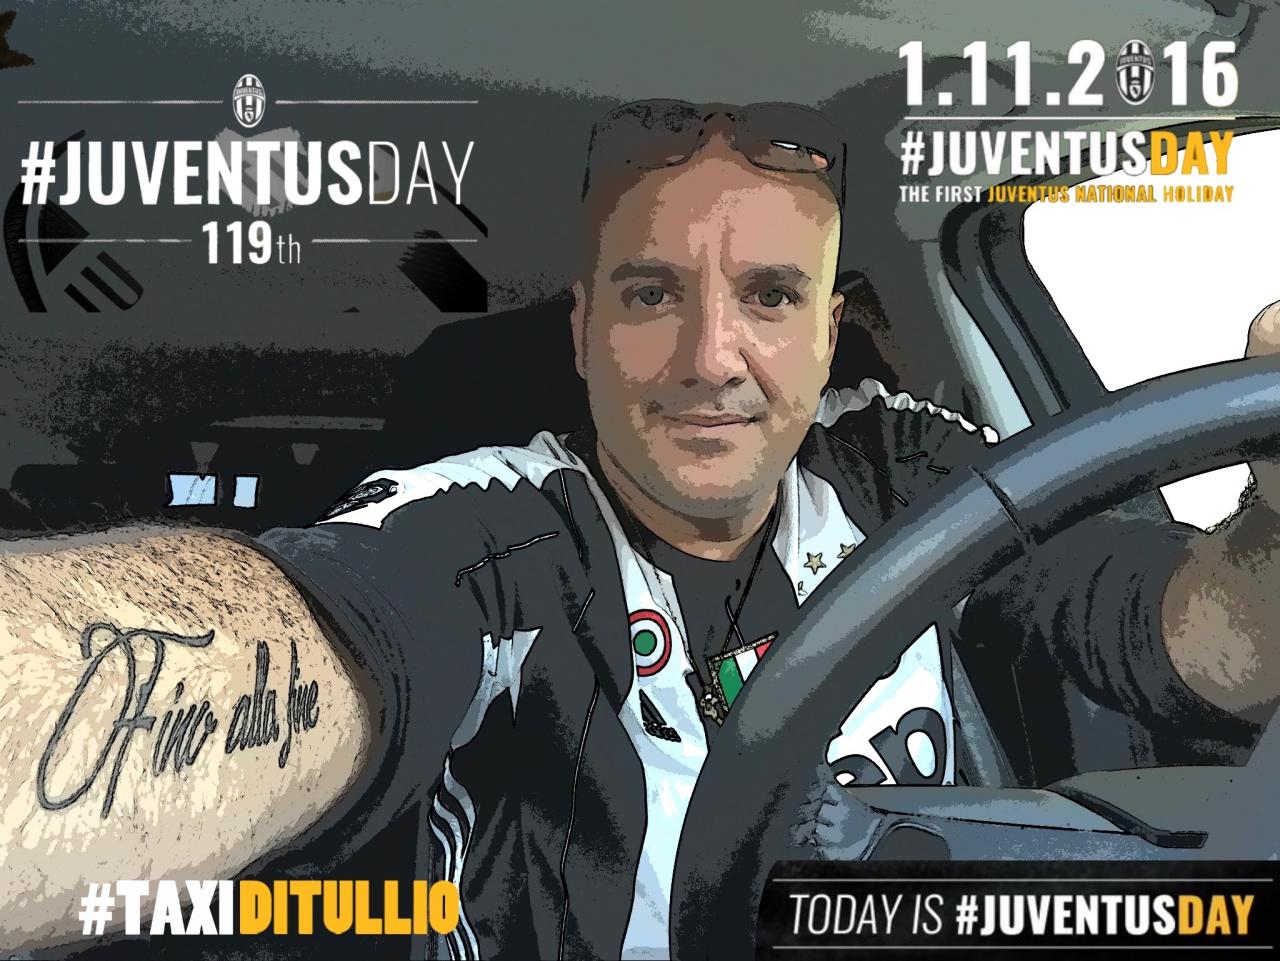 #TaxiDiTullio #JuventusDay